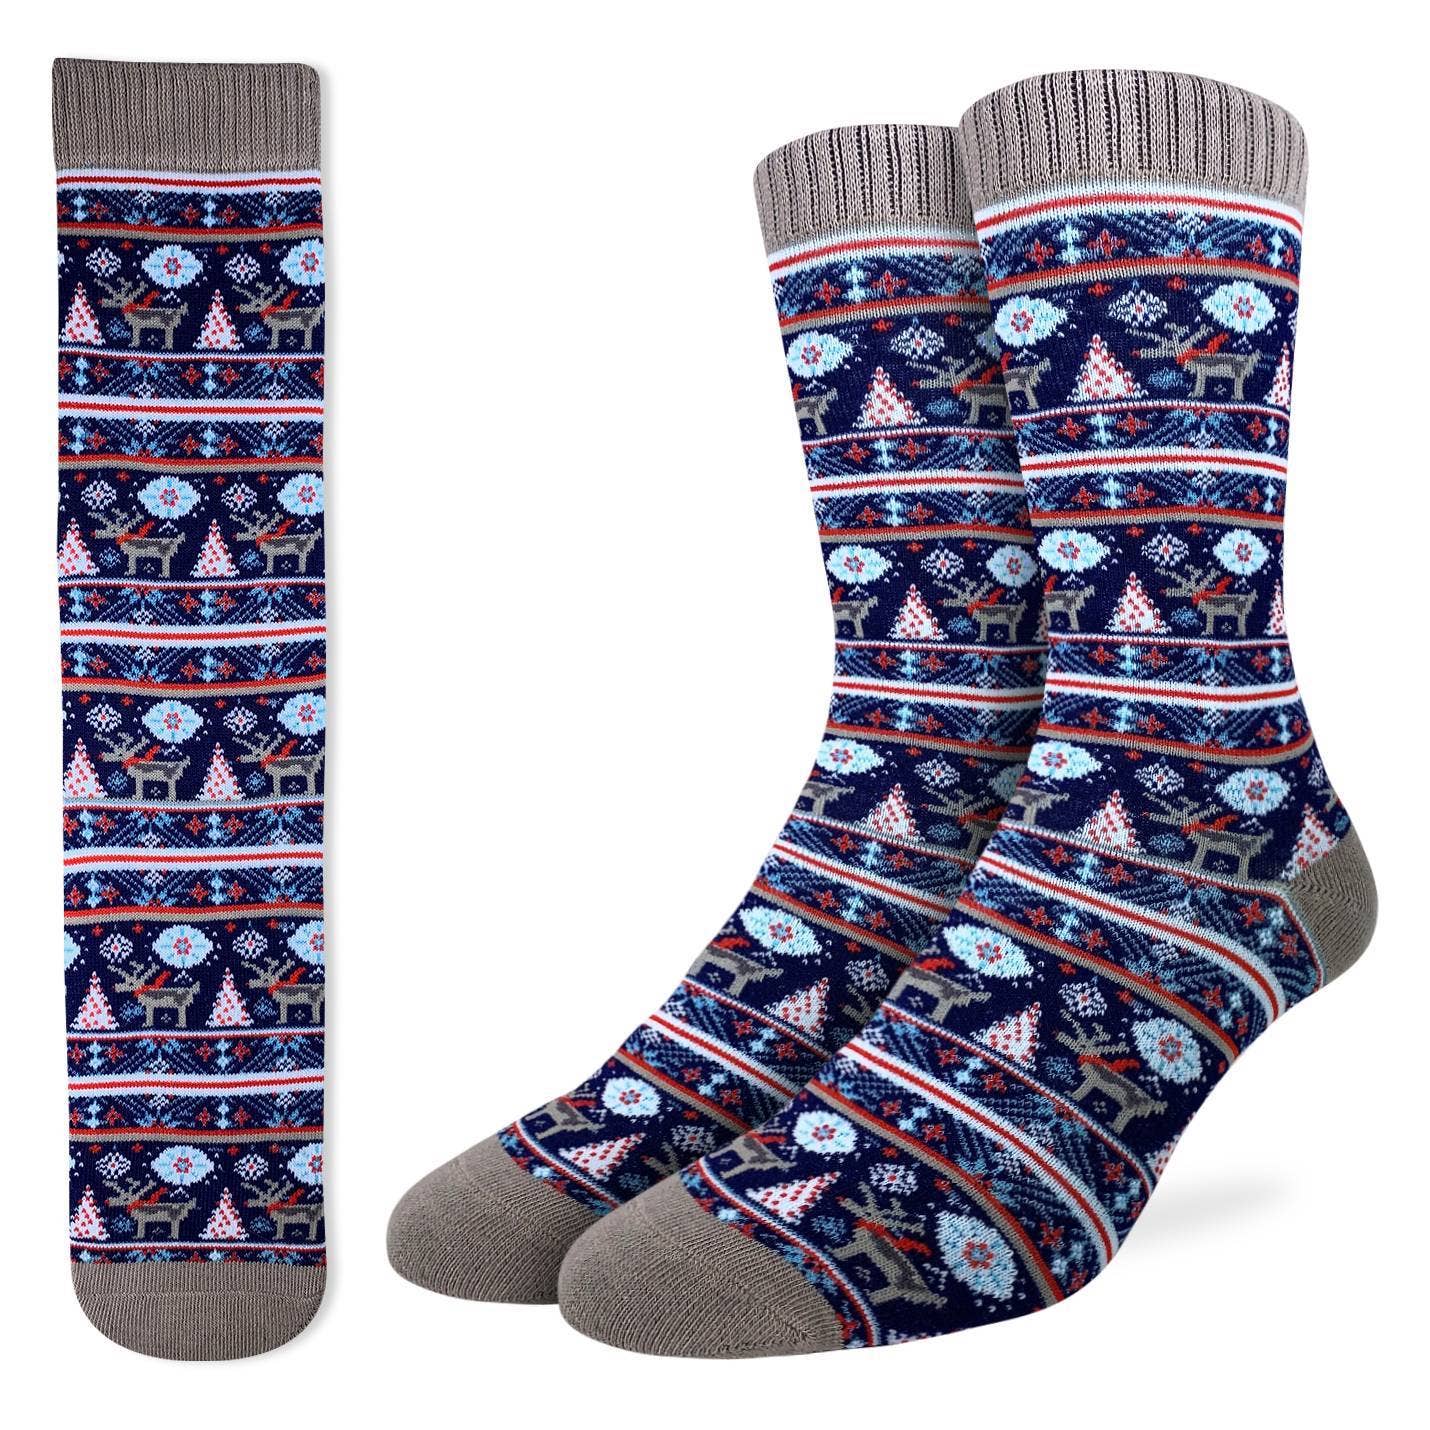 Men's Festive Christmas Socks